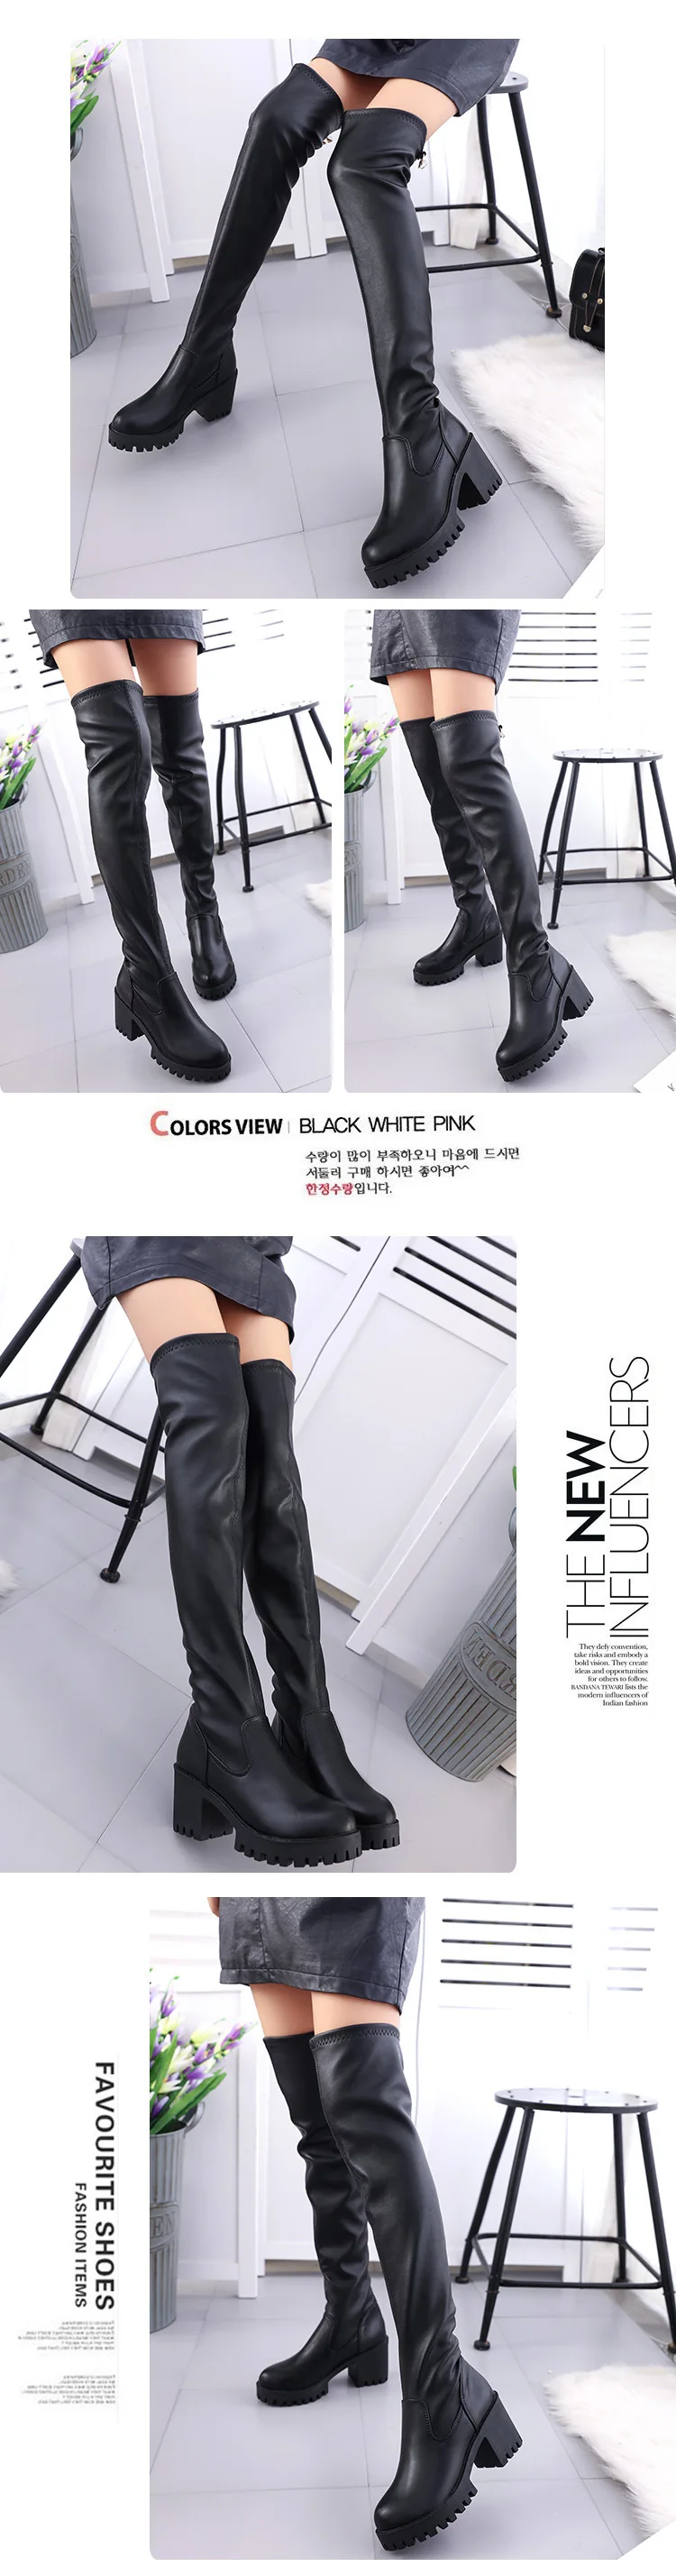 Г. Новые пикантные Зимние ботфорты эластичные сапоги на толстых тонких ножках, кожаные высокие сапоги женские сапоги на высоком каблуке A012